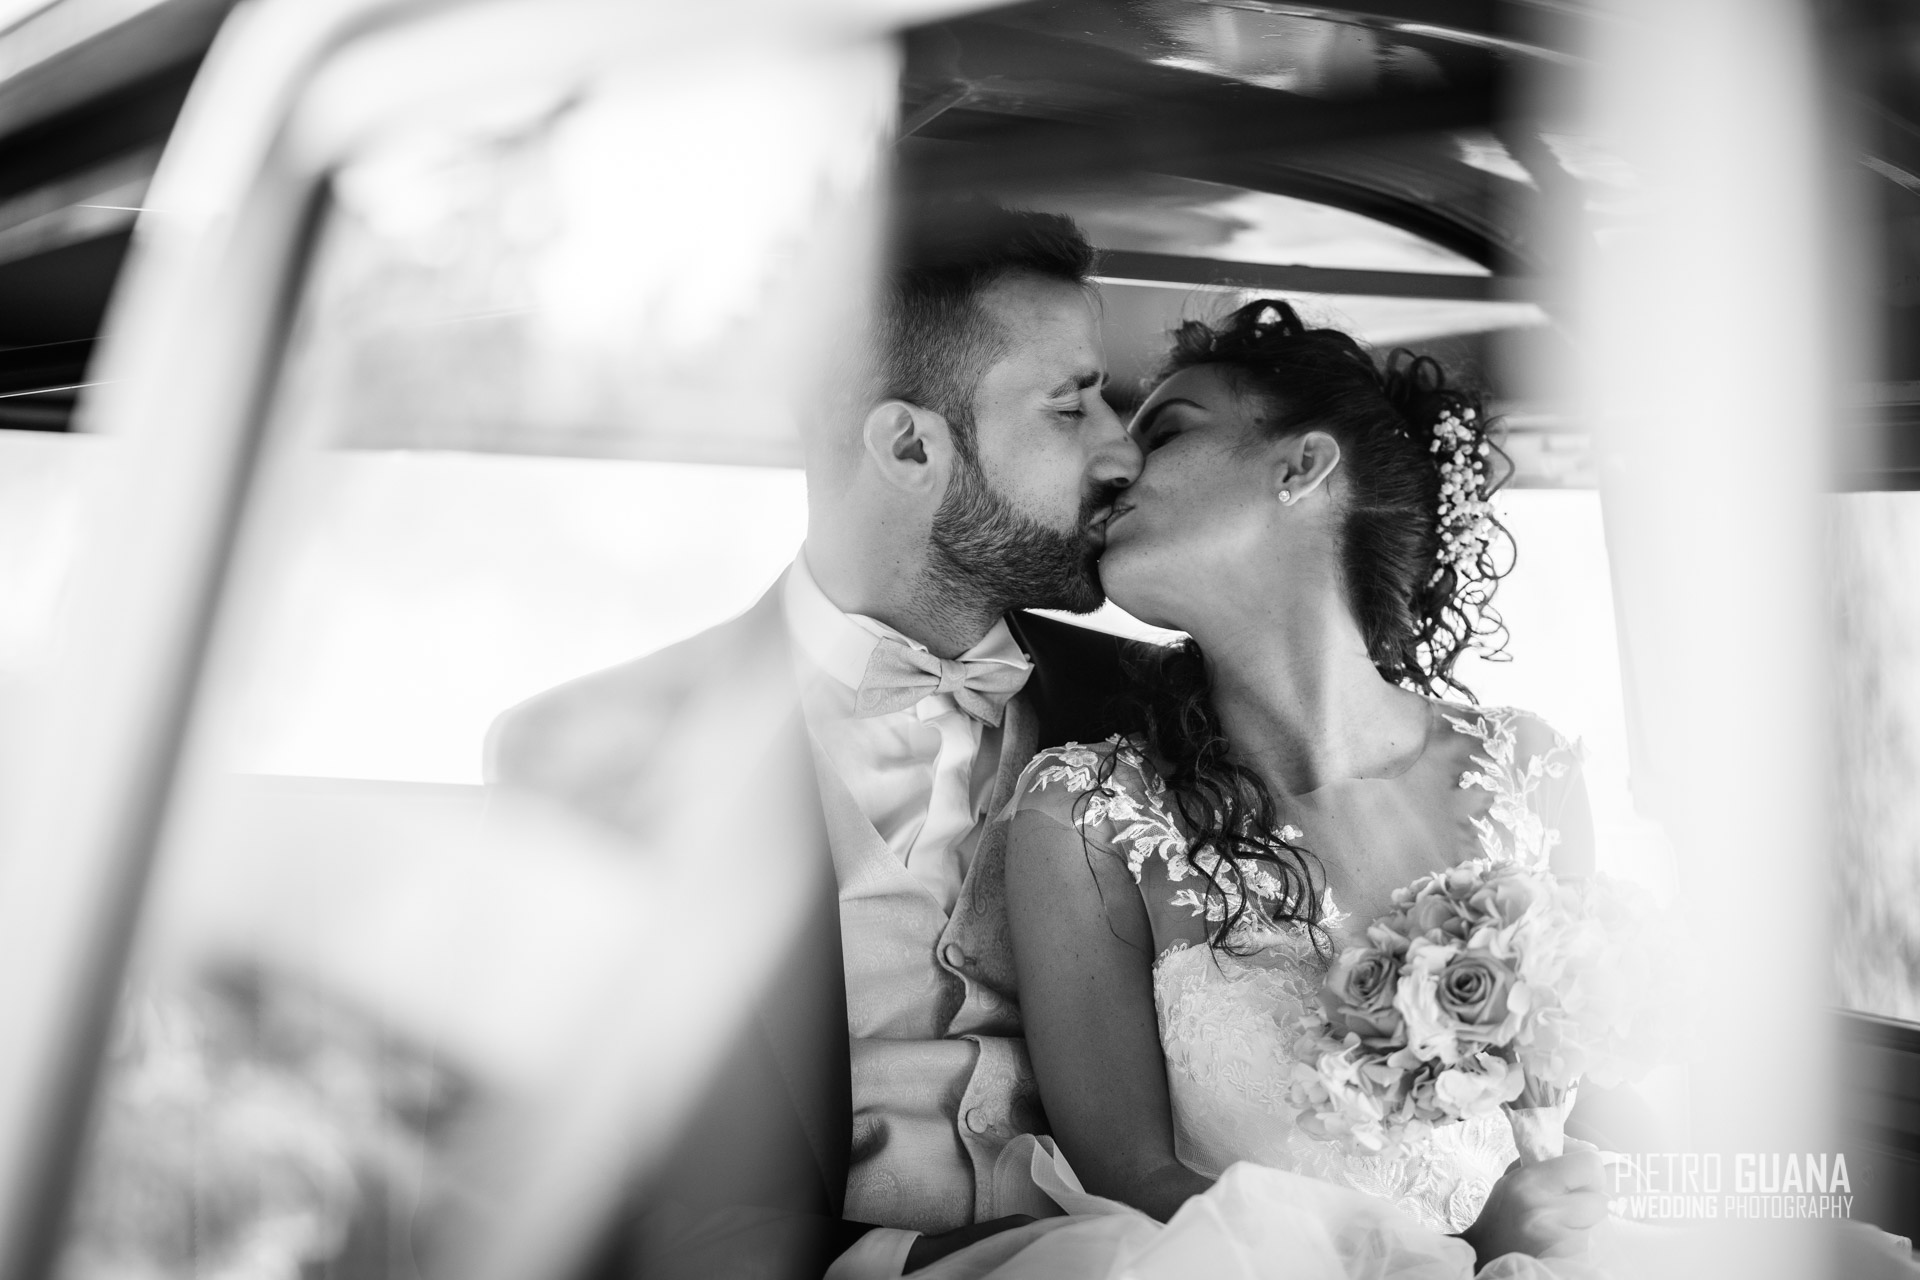 Matrimonio Ristorante da Giorgio Ardesio Chiara e Claudio Pietro Guana Fotografo